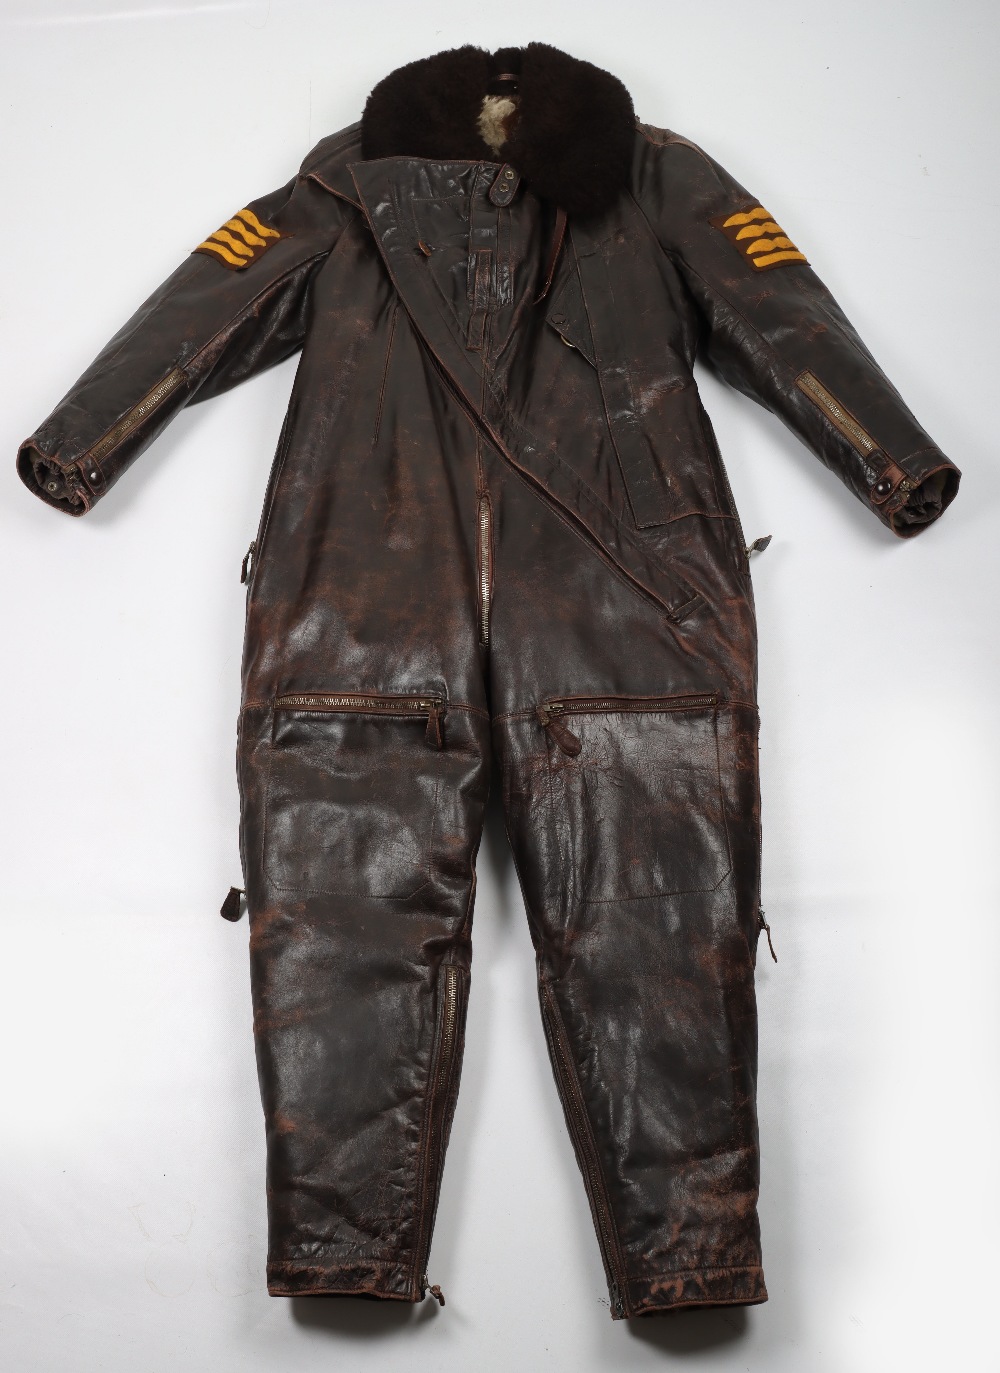 WW2 German Luftwaffe Winter Flight Suit “Winterfliegerkombie” for Flying Over Water